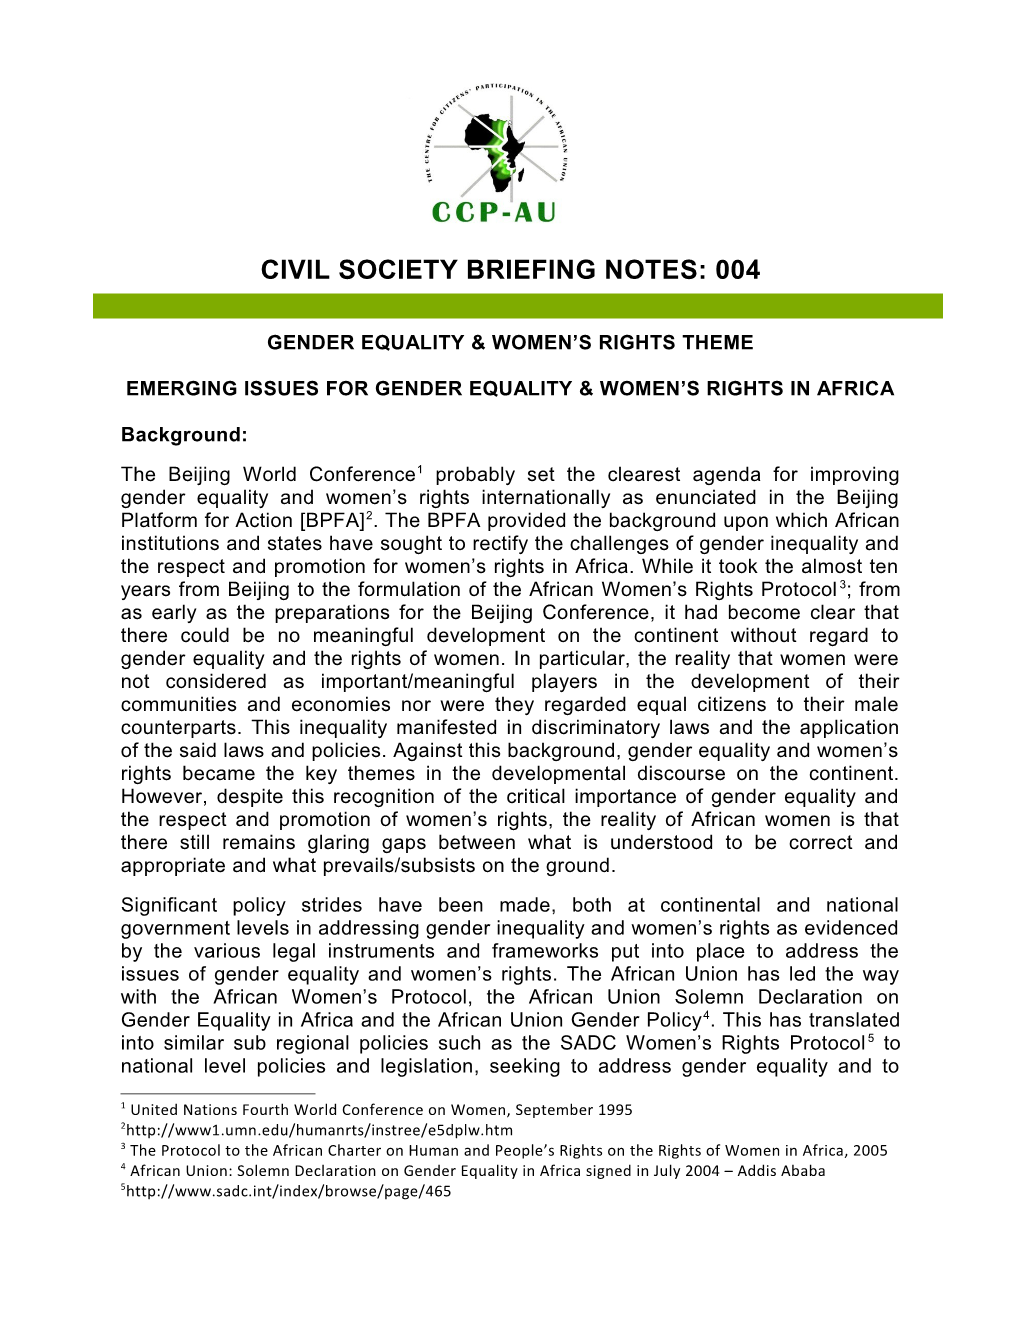 Civil Society Briefing Notes: 004